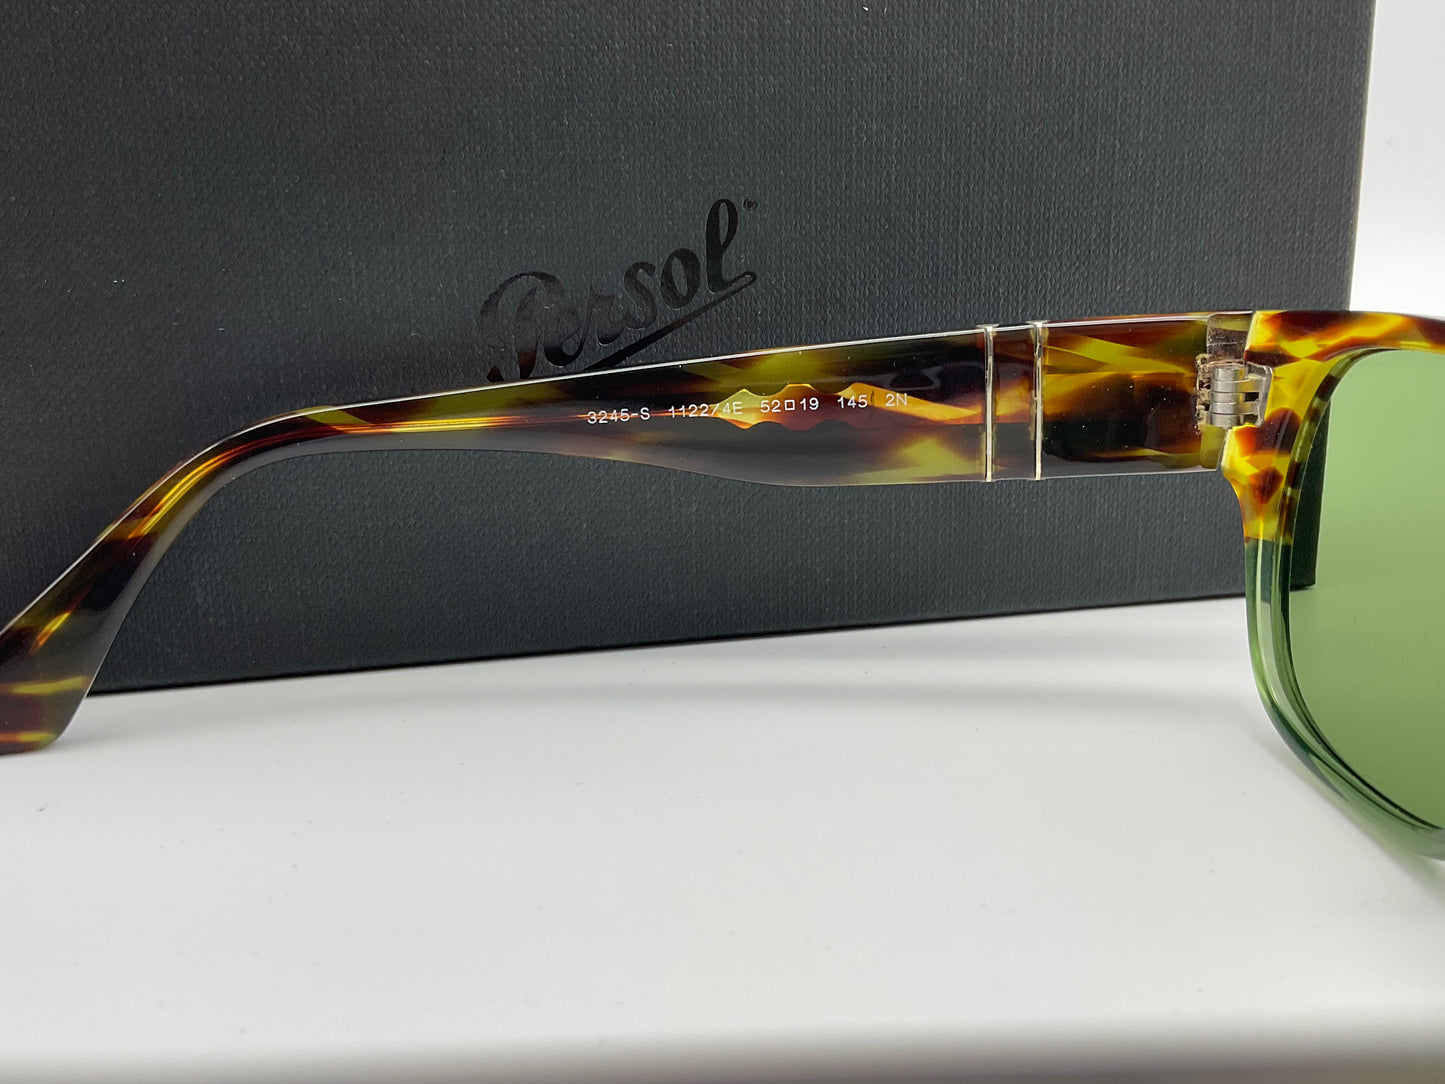 Persol PO 3245s 52Mm Sunglasses Men's Green